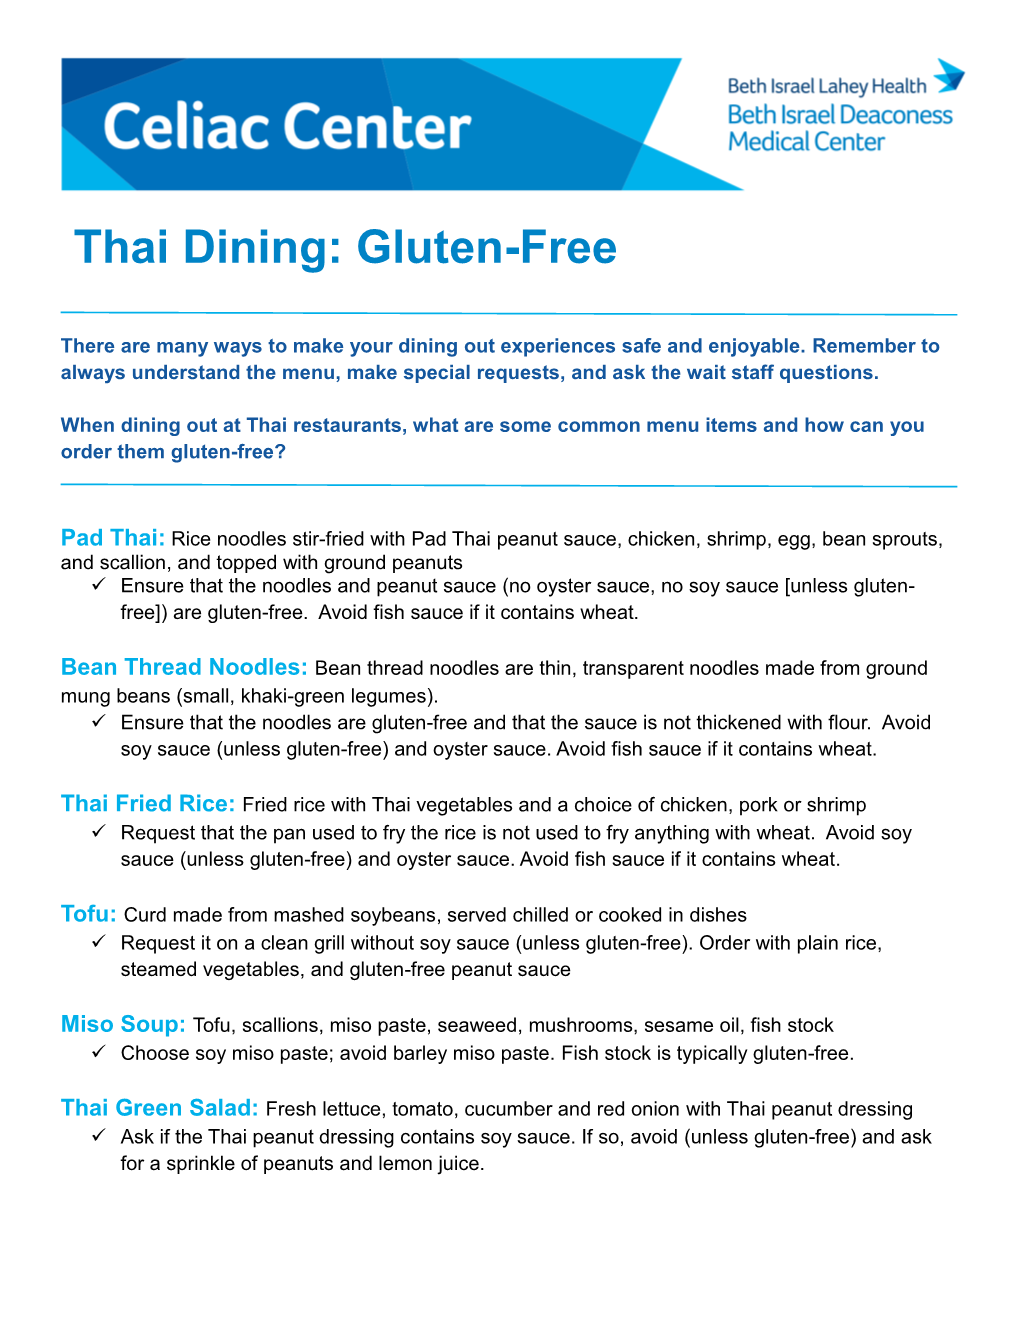 Thai Dining: Gluten-Free